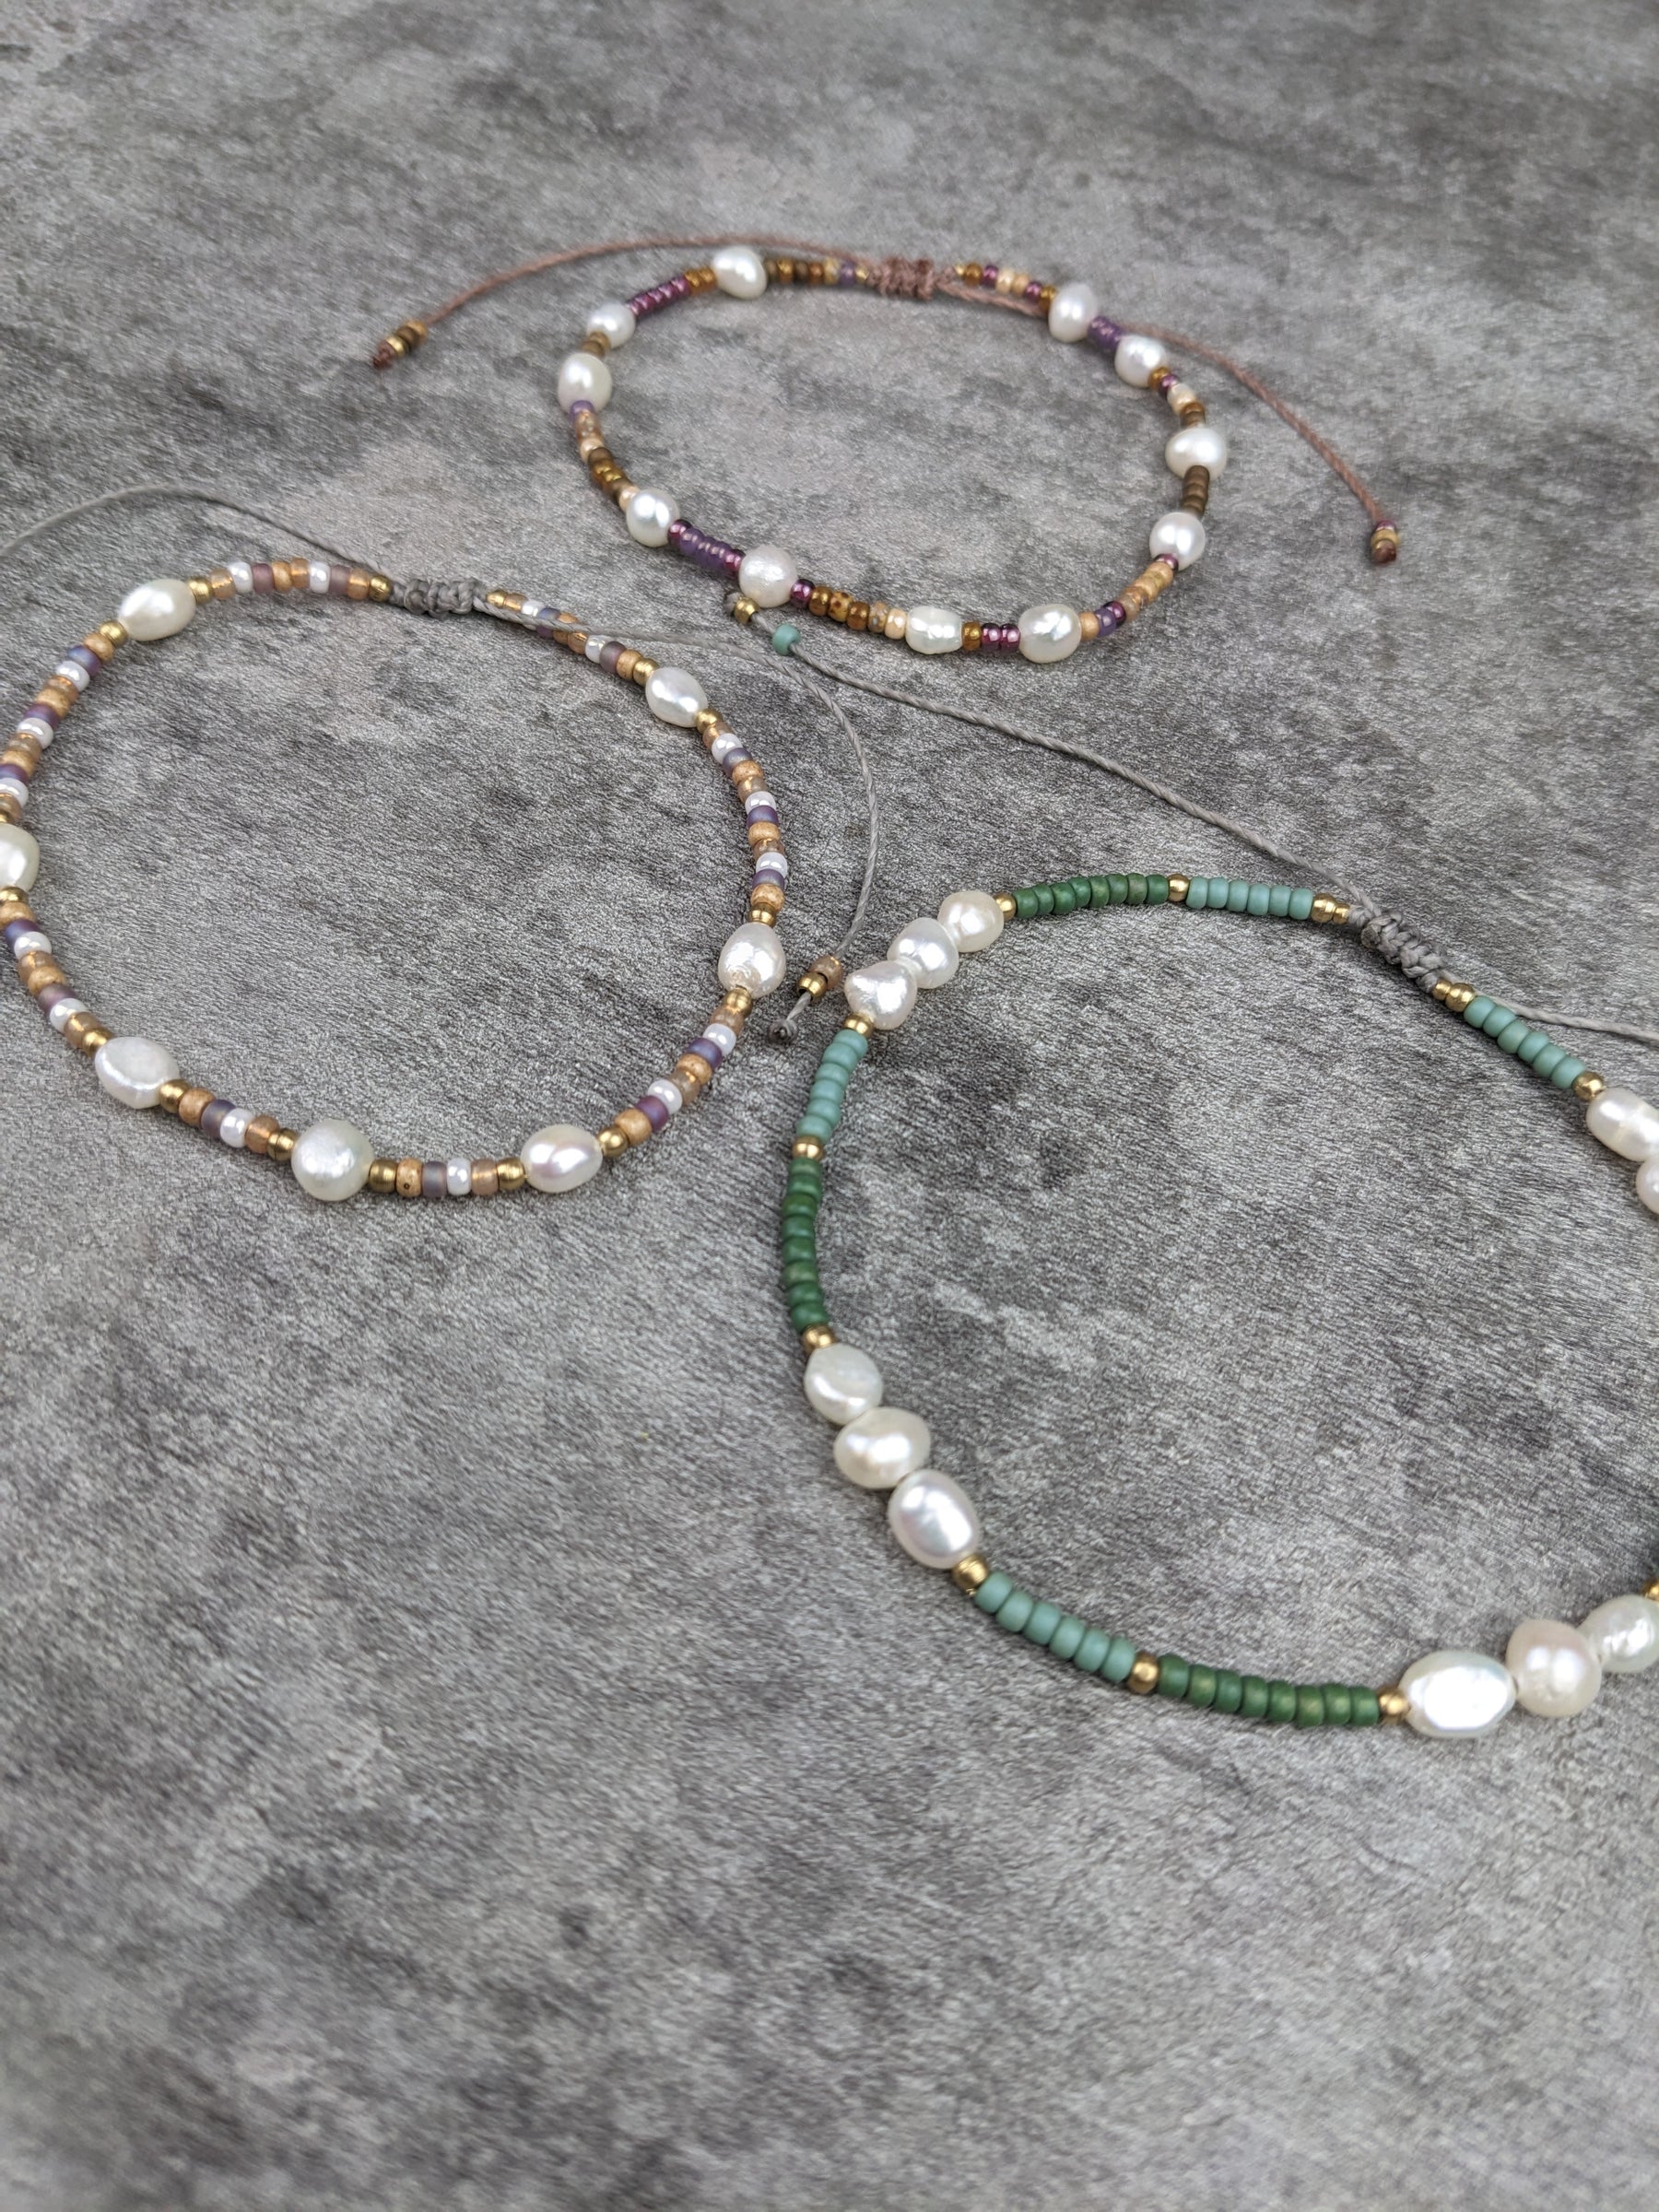 verspieltes süßwasser perlen armband mit bunten glasperlen im bohemian style